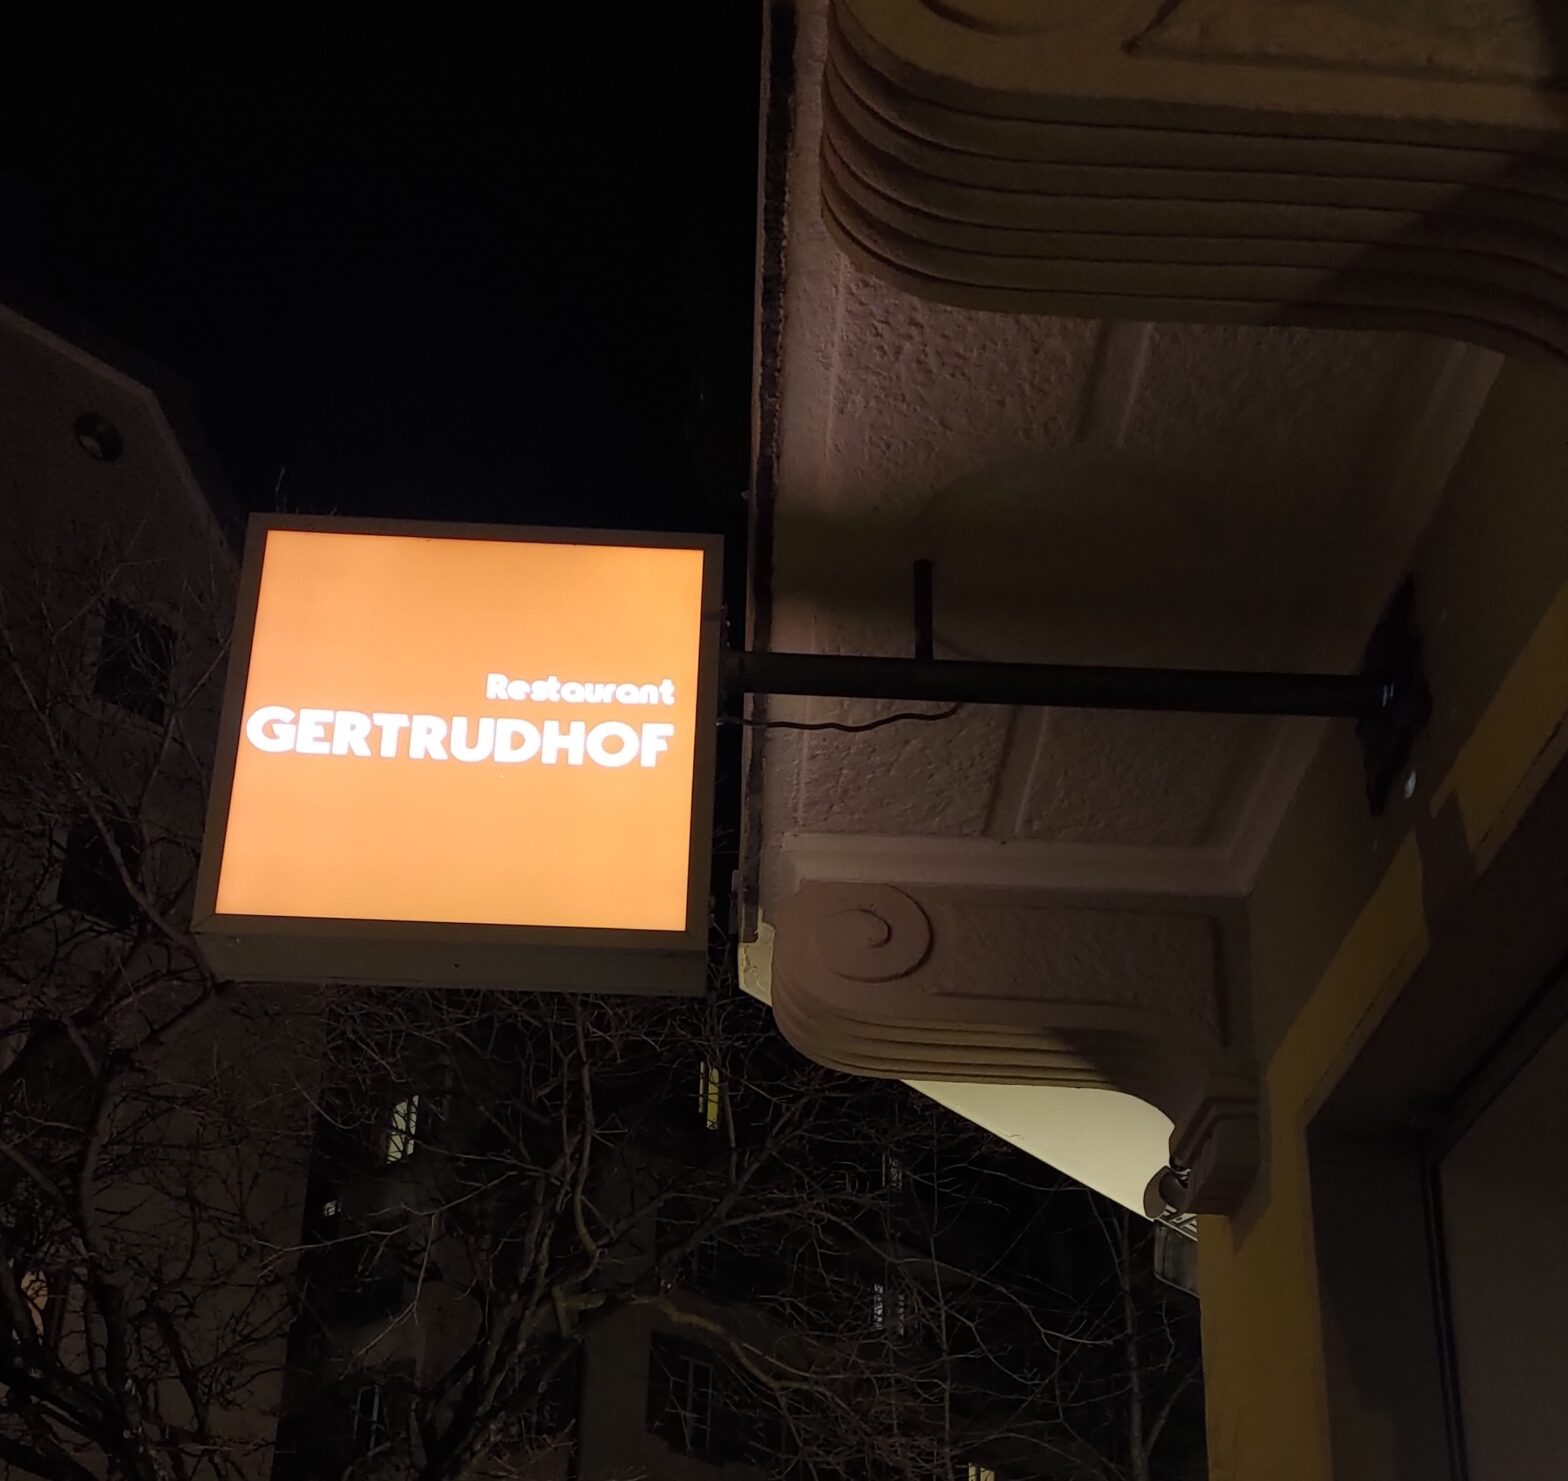 Namenstafel Restaurant Gertrudhof in der Nacht